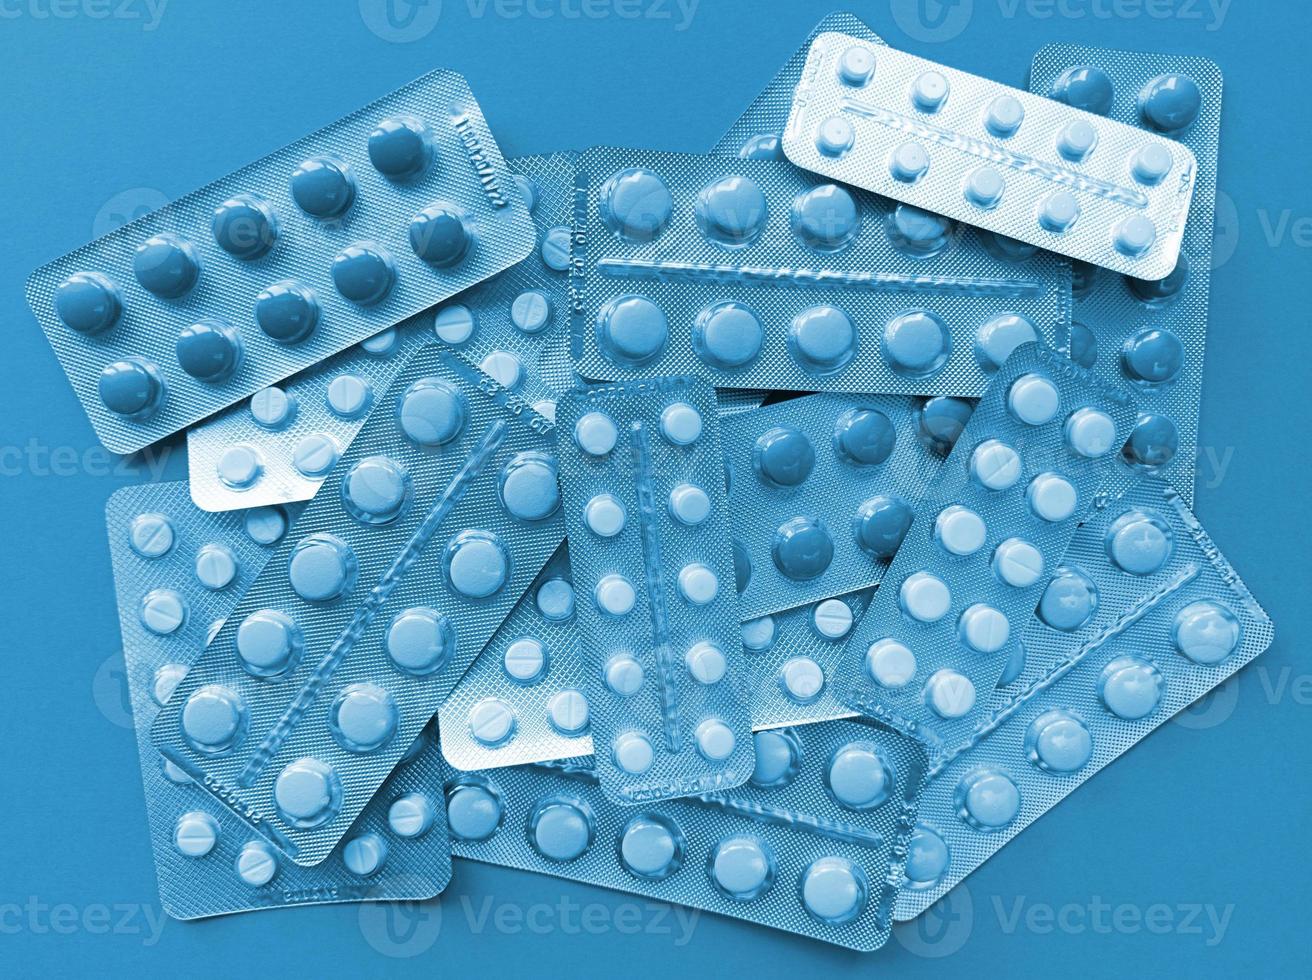 ett gäng piller i blåsor medicinskt begrepp blå monokrom stock foto